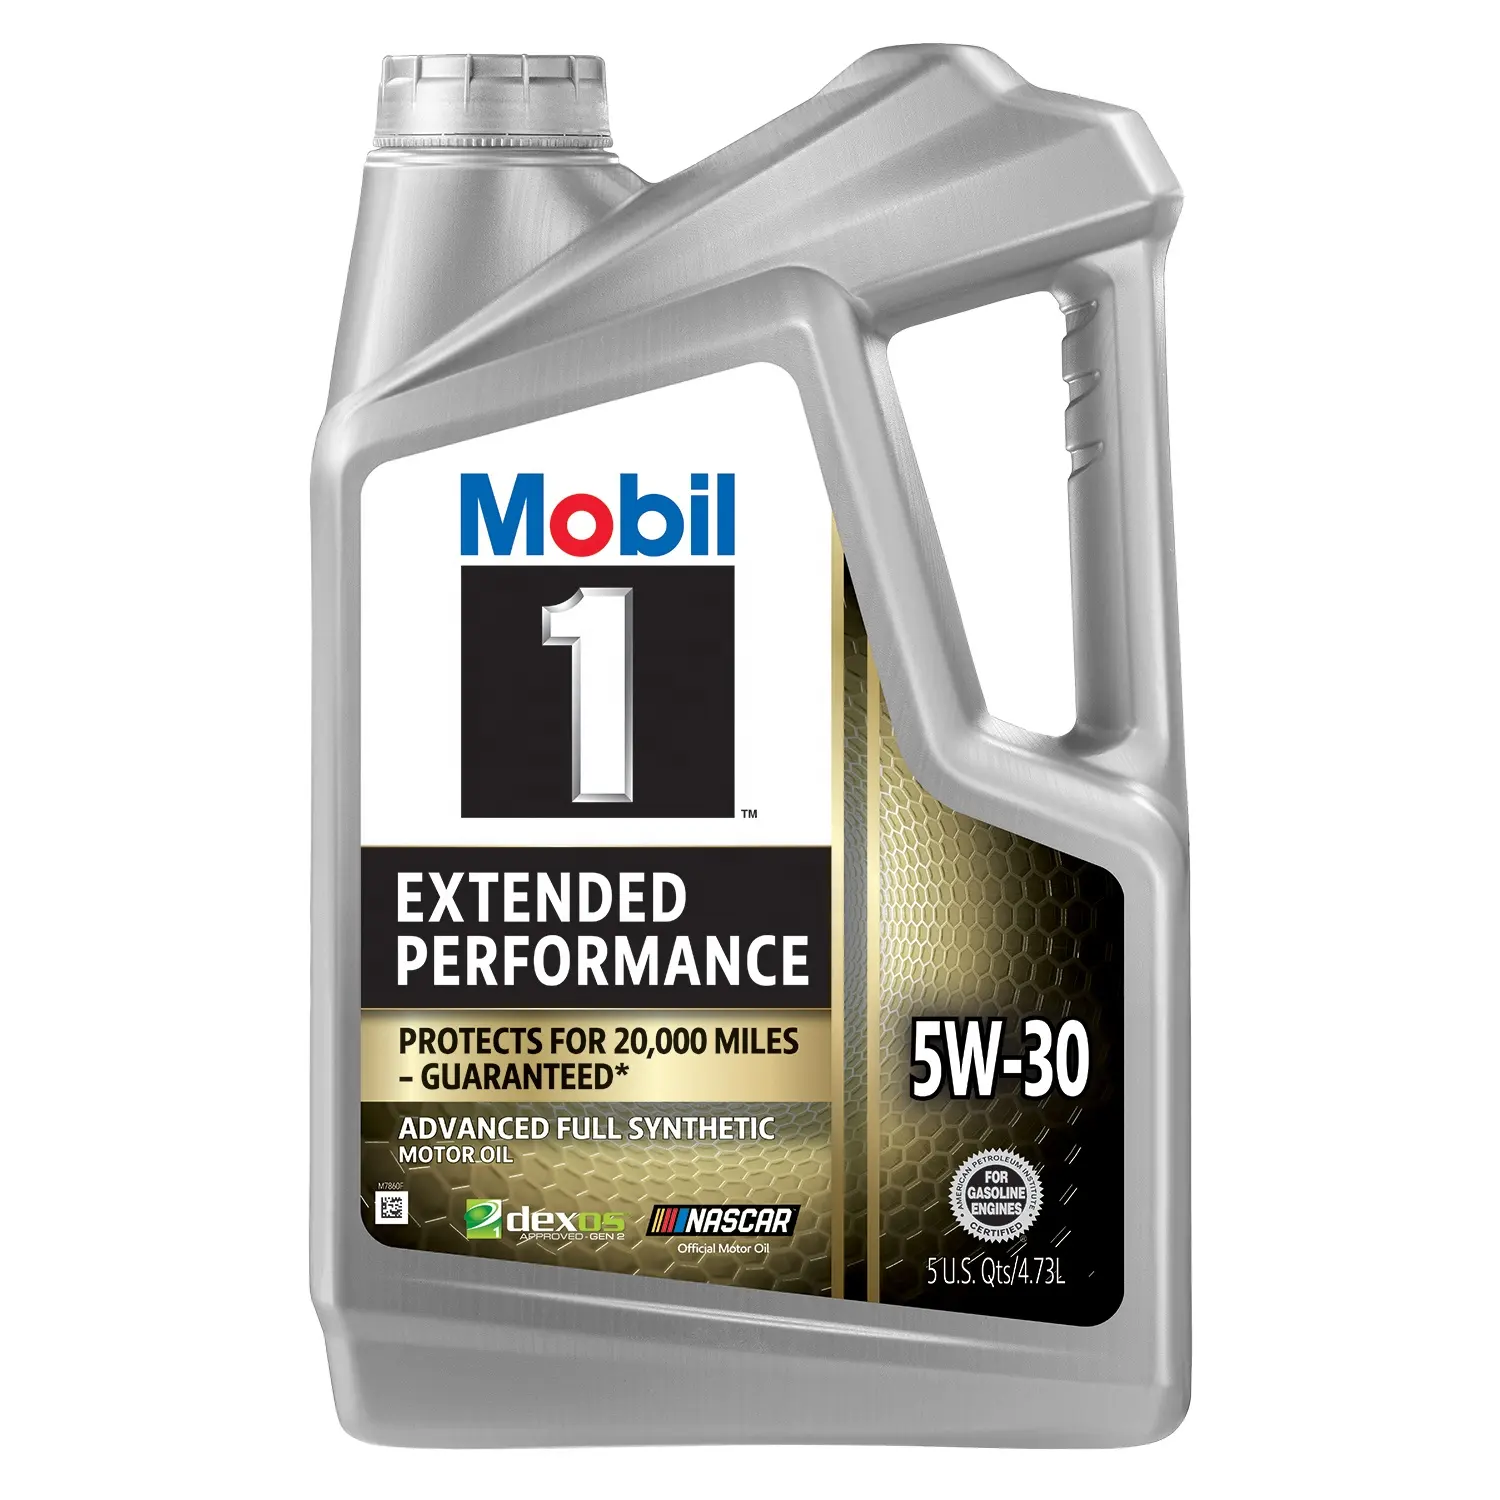 Mobil 1 5W30 aceite de Motor sintético de rendimiento extendido-5 Quart (paquete de 3)